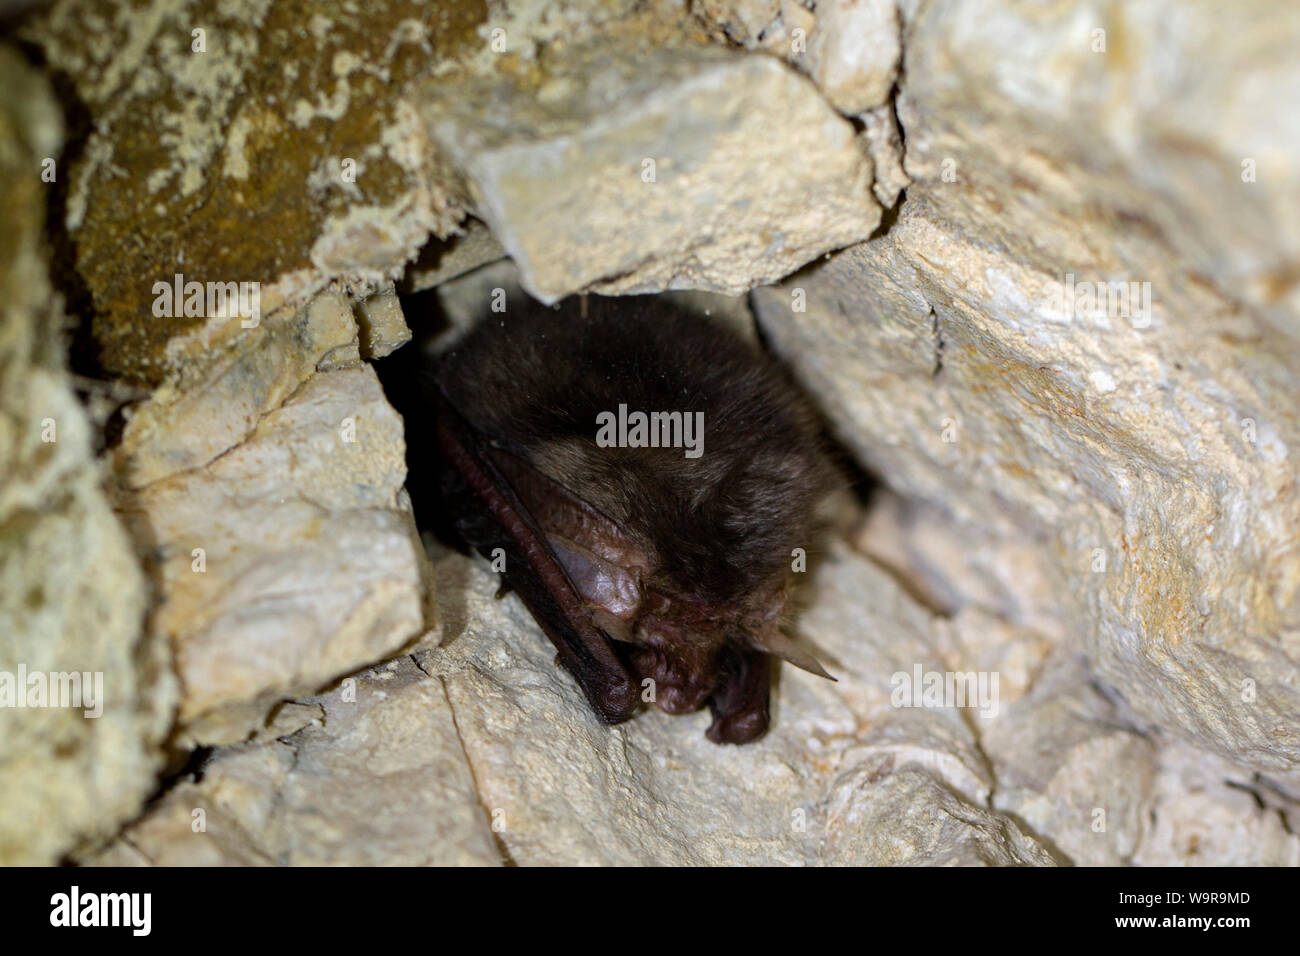 daubenton's bat, mammals, bats, winter habitat, (Myotis daubentonii) Stock Photo